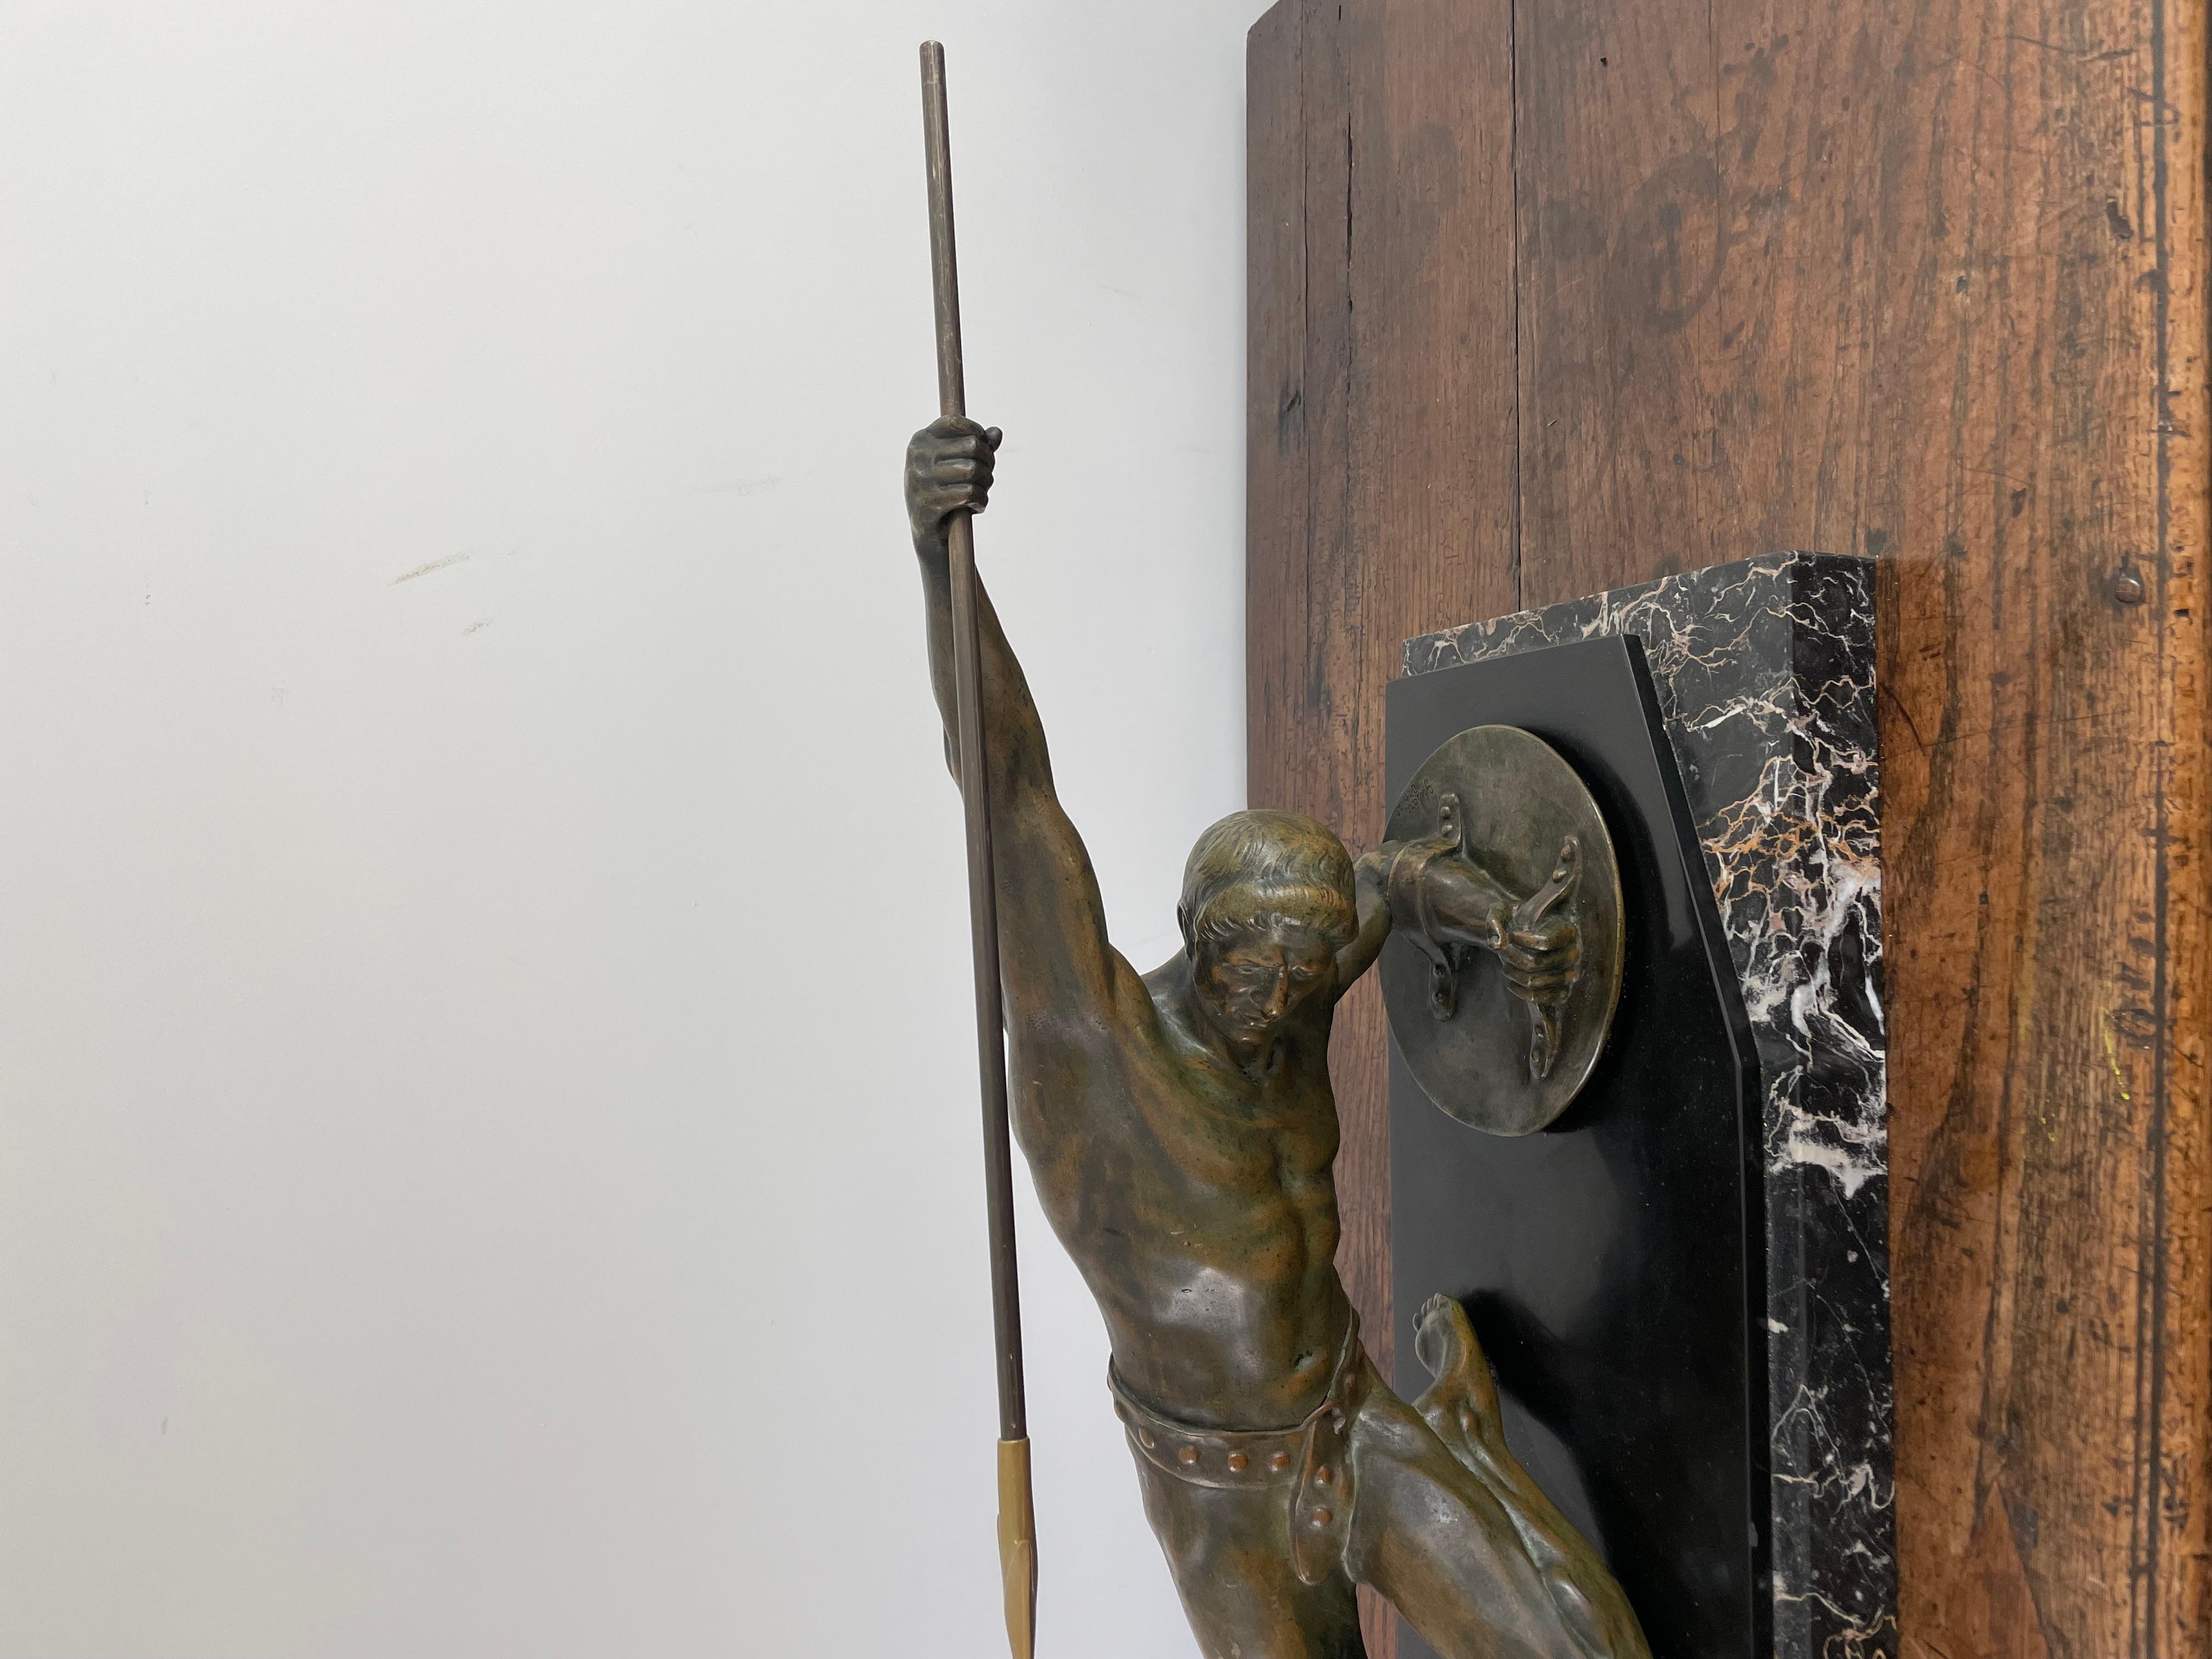 Superbe sculpture en bronze Art déco d'un gladiateur avec lance et bouclier
Circa 1925 signé Desire Grisard , bronze
Monté sur socle en ardoise belge noire et marbre noir veiné
L. 86 cm. x H. 37 cm x L. 23,5 cm.
L. 33,9 pouces x H. 14,6 pouces x L.